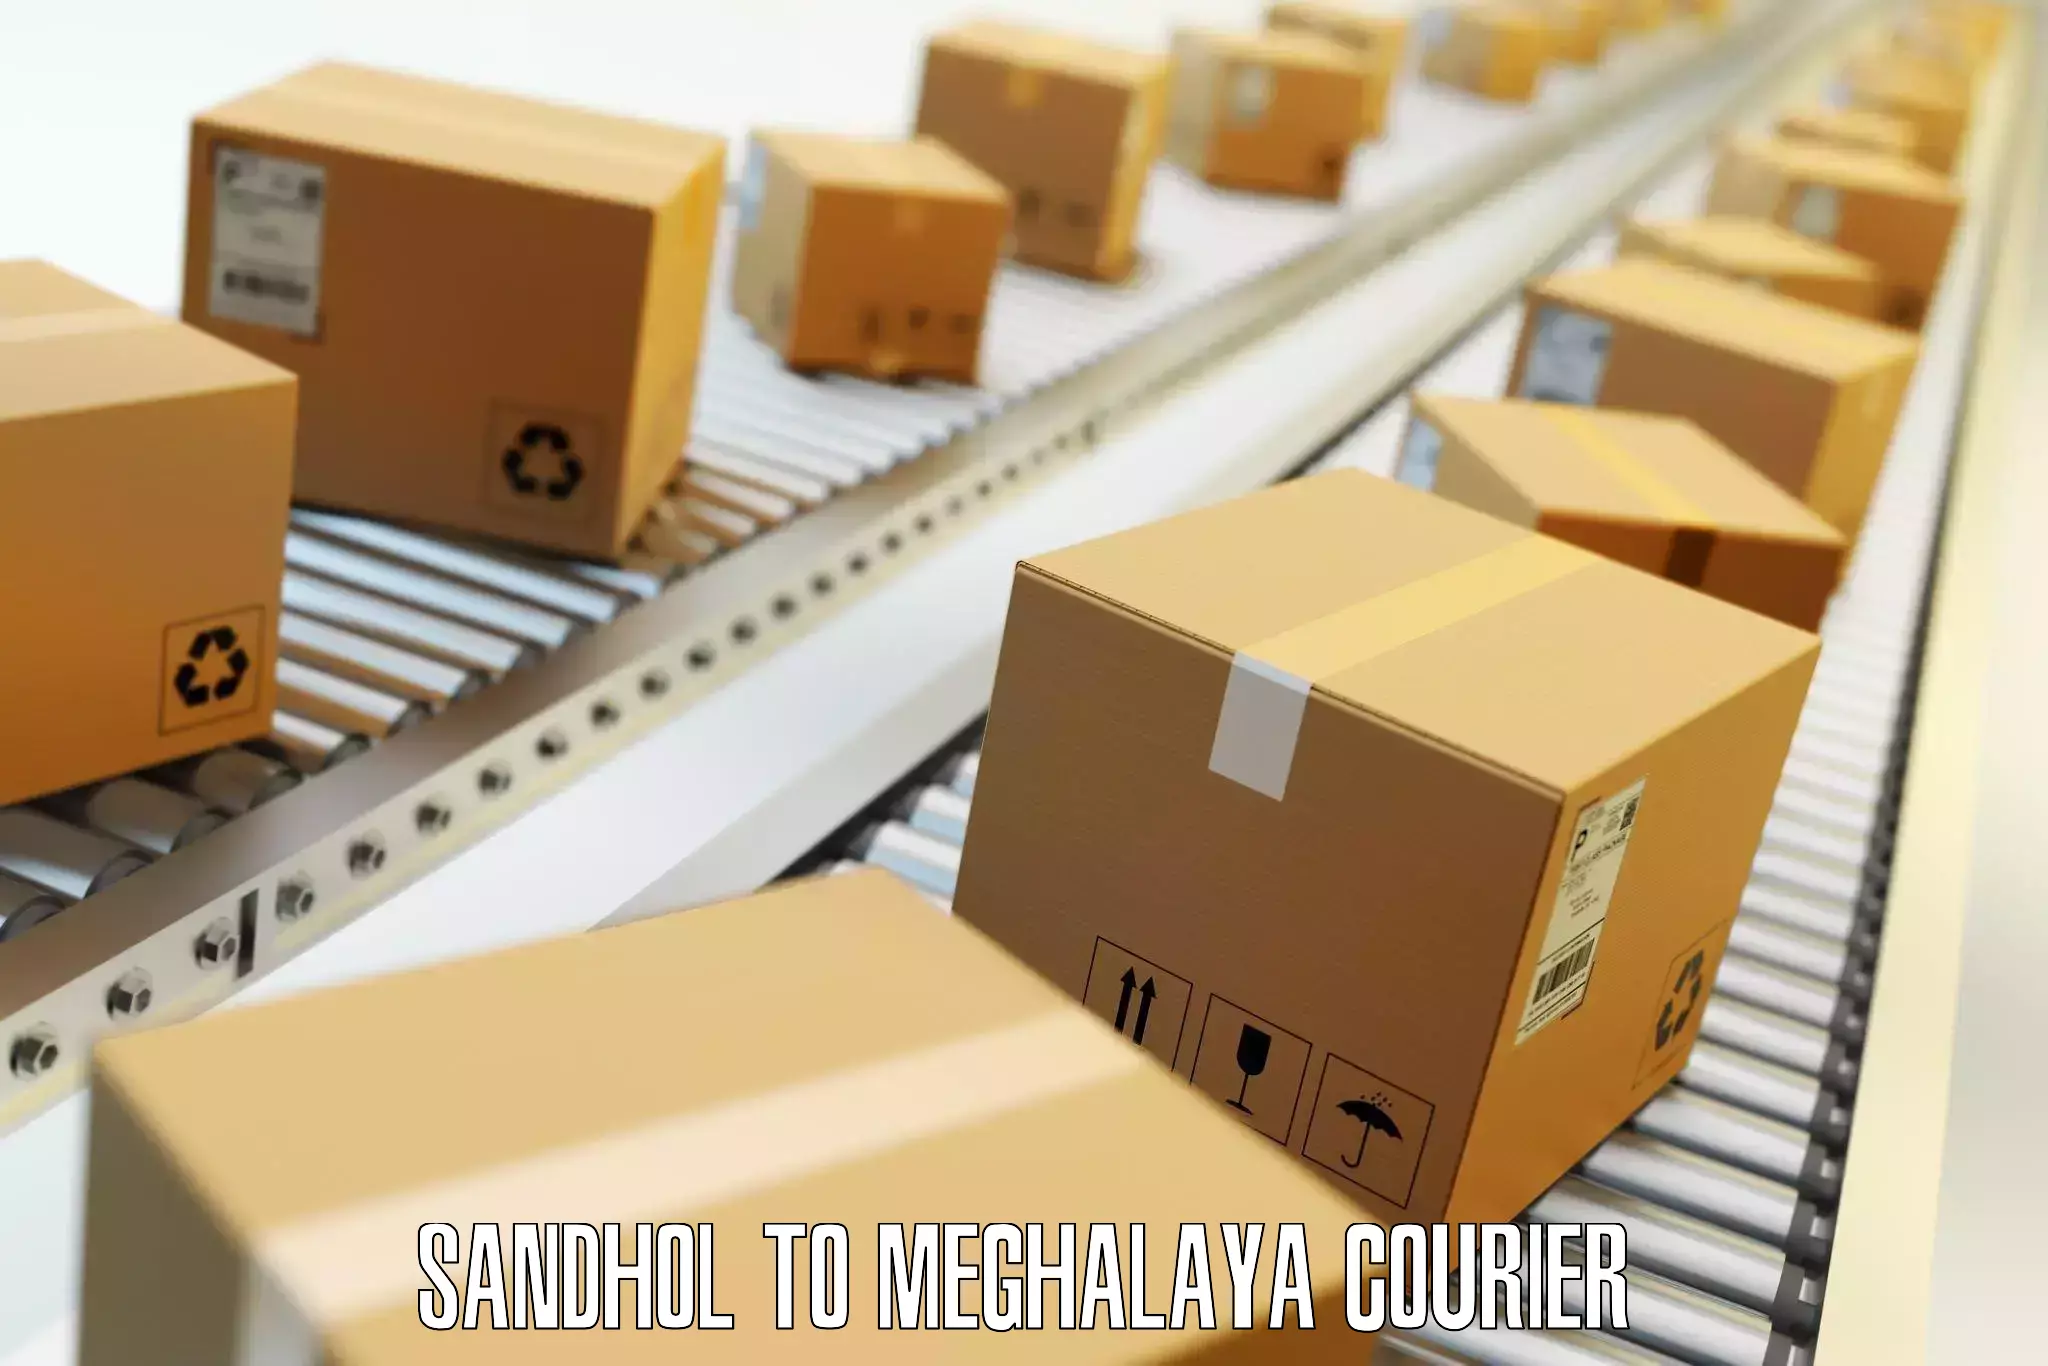 Baggage transport technology Sandhol to Meghalaya